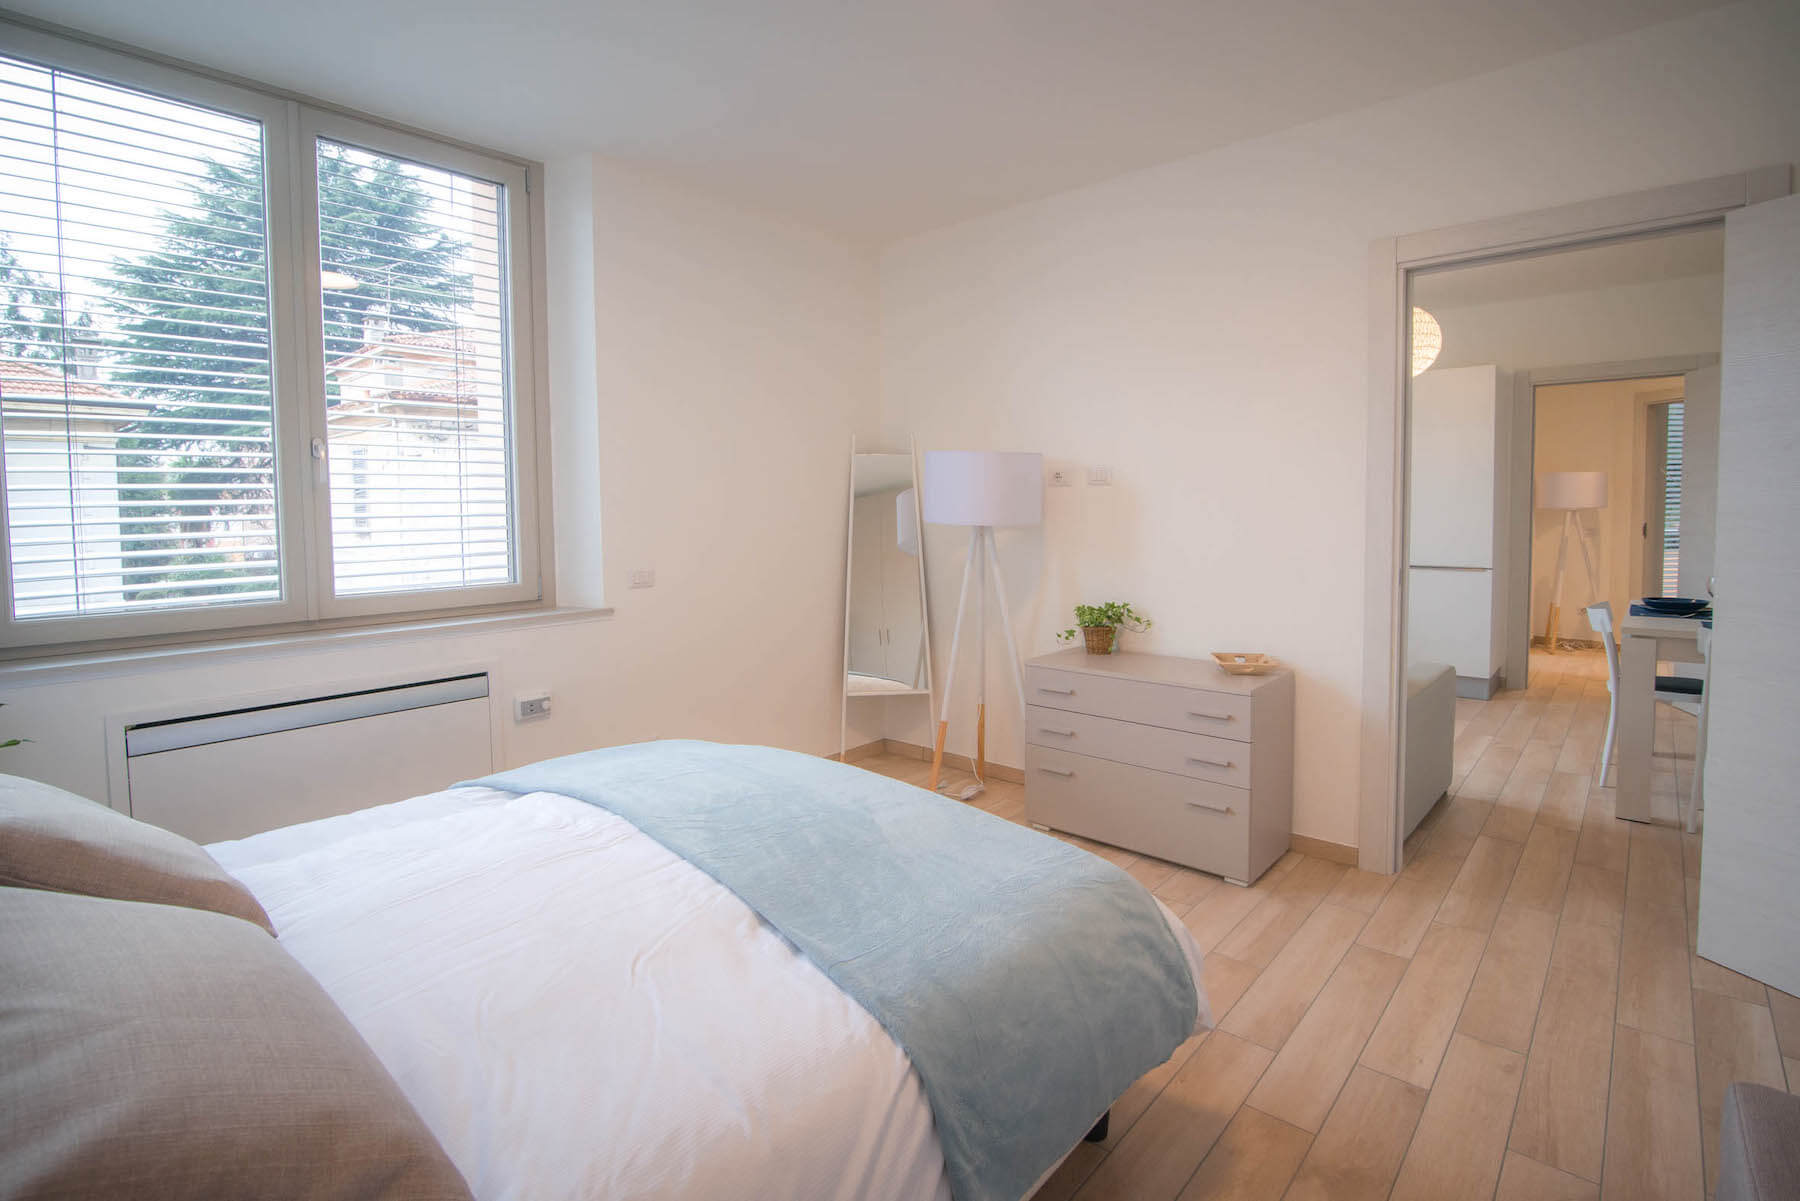 Camera da letto con letto, specchio, lampada, cassettiera, finestra ed elementi decorativi